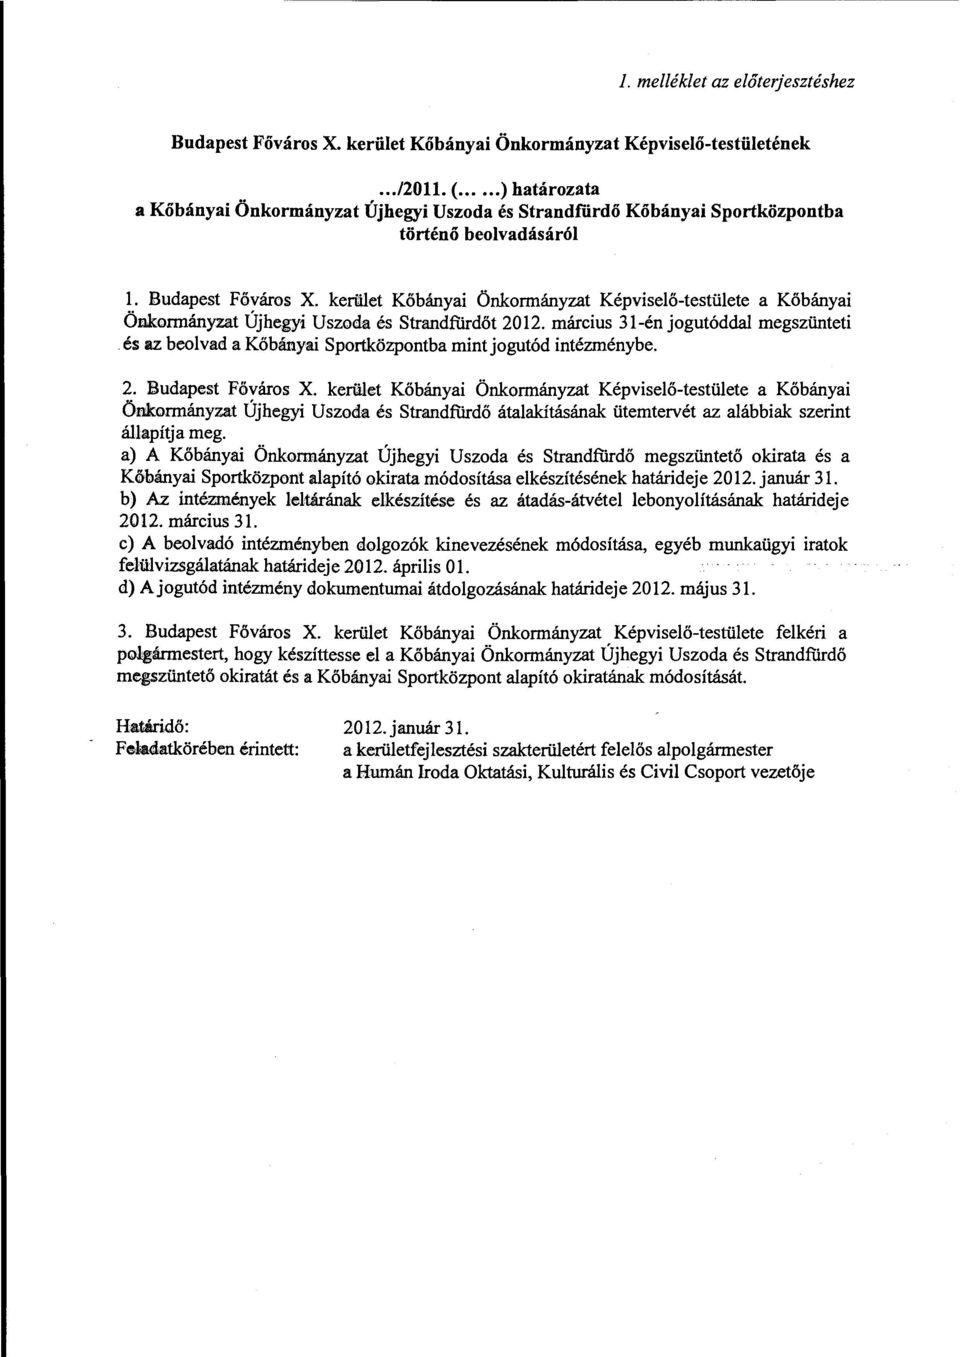 kerület Kőbányai Önkormányzat Képviselő-testülete a Kőbányai Önkormányzat Újhegyi Uszoda és Strandfiirdőt 2012. március 31-én jogutóddal megszünteti.